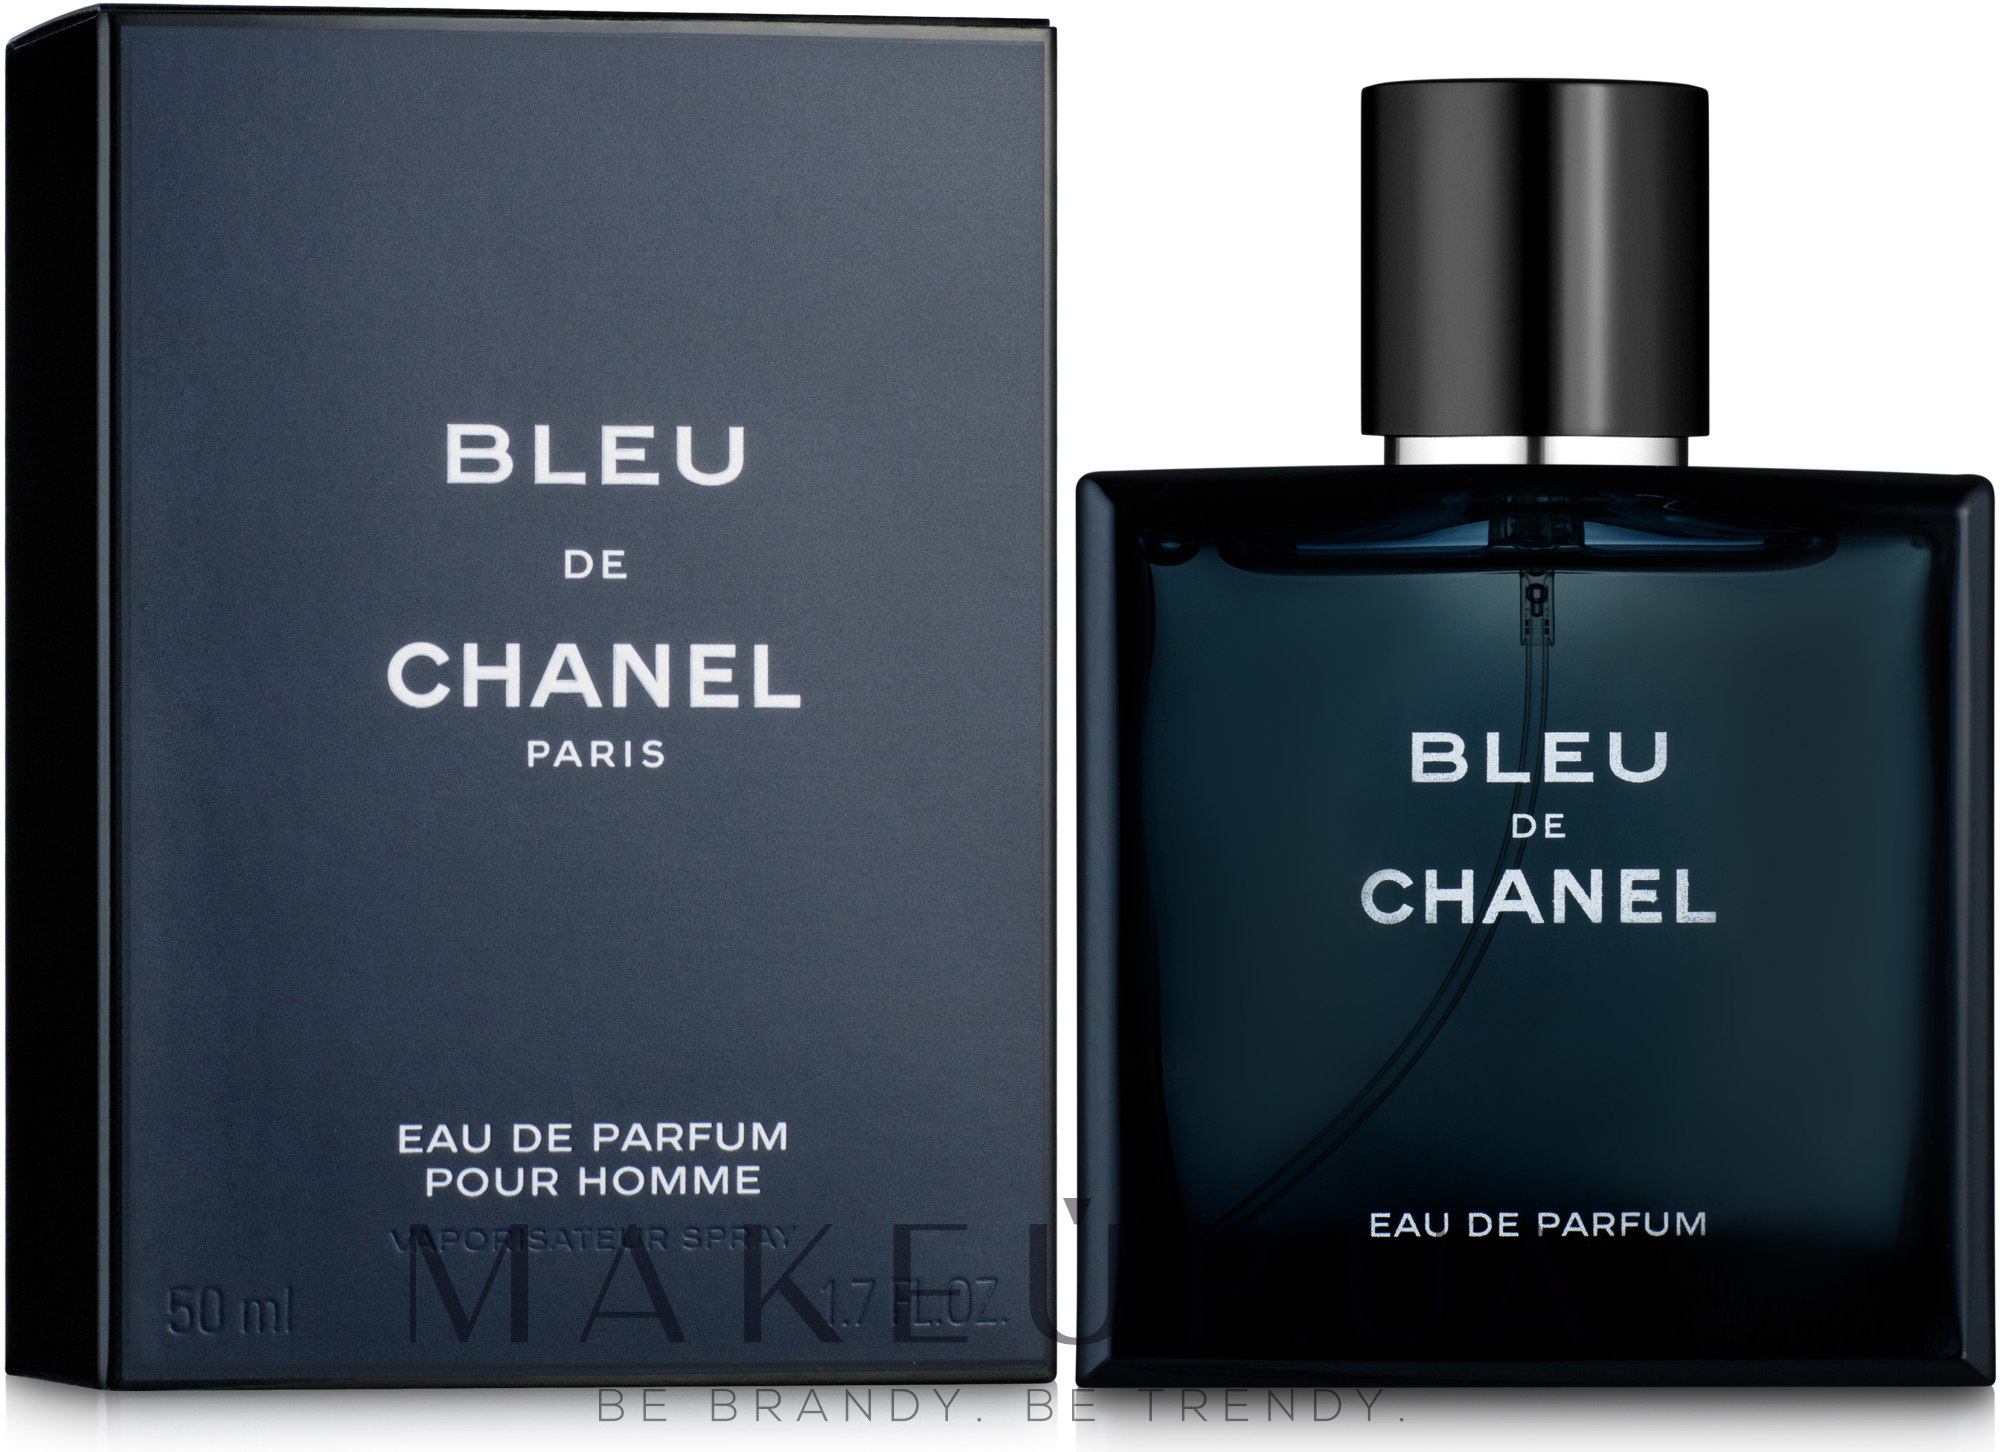 Bleu de Chanel Eau De Parfum  100мл мужской парфюм The North Face  146111613 купить в интернетмагазине Wildberries